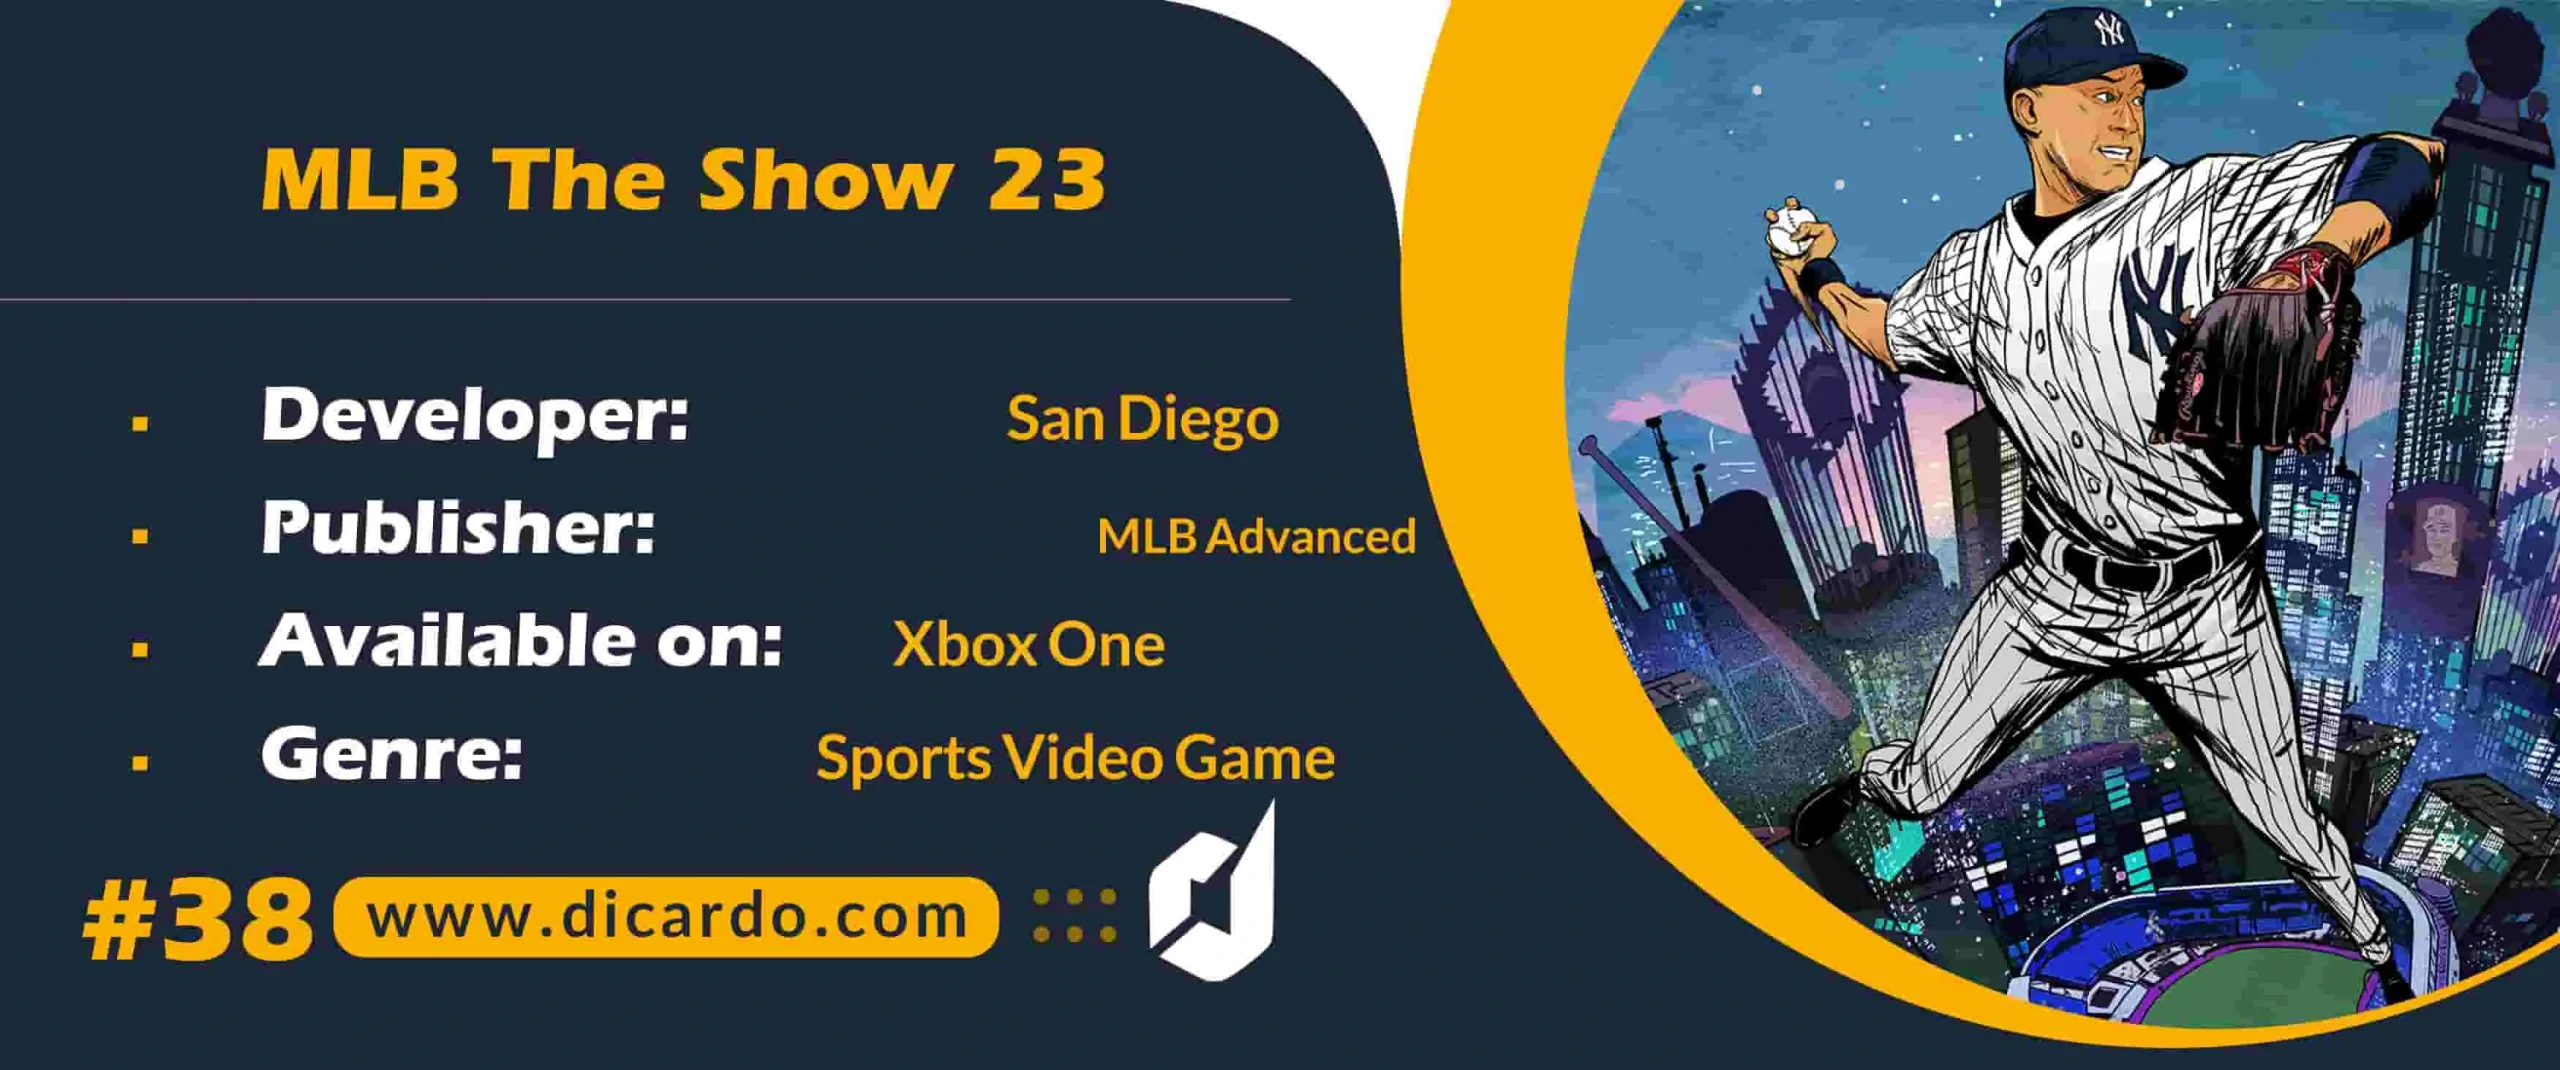 #38 ام ال بی د شو MLB The Show 23 از بازیهای Xbox One سال 2023